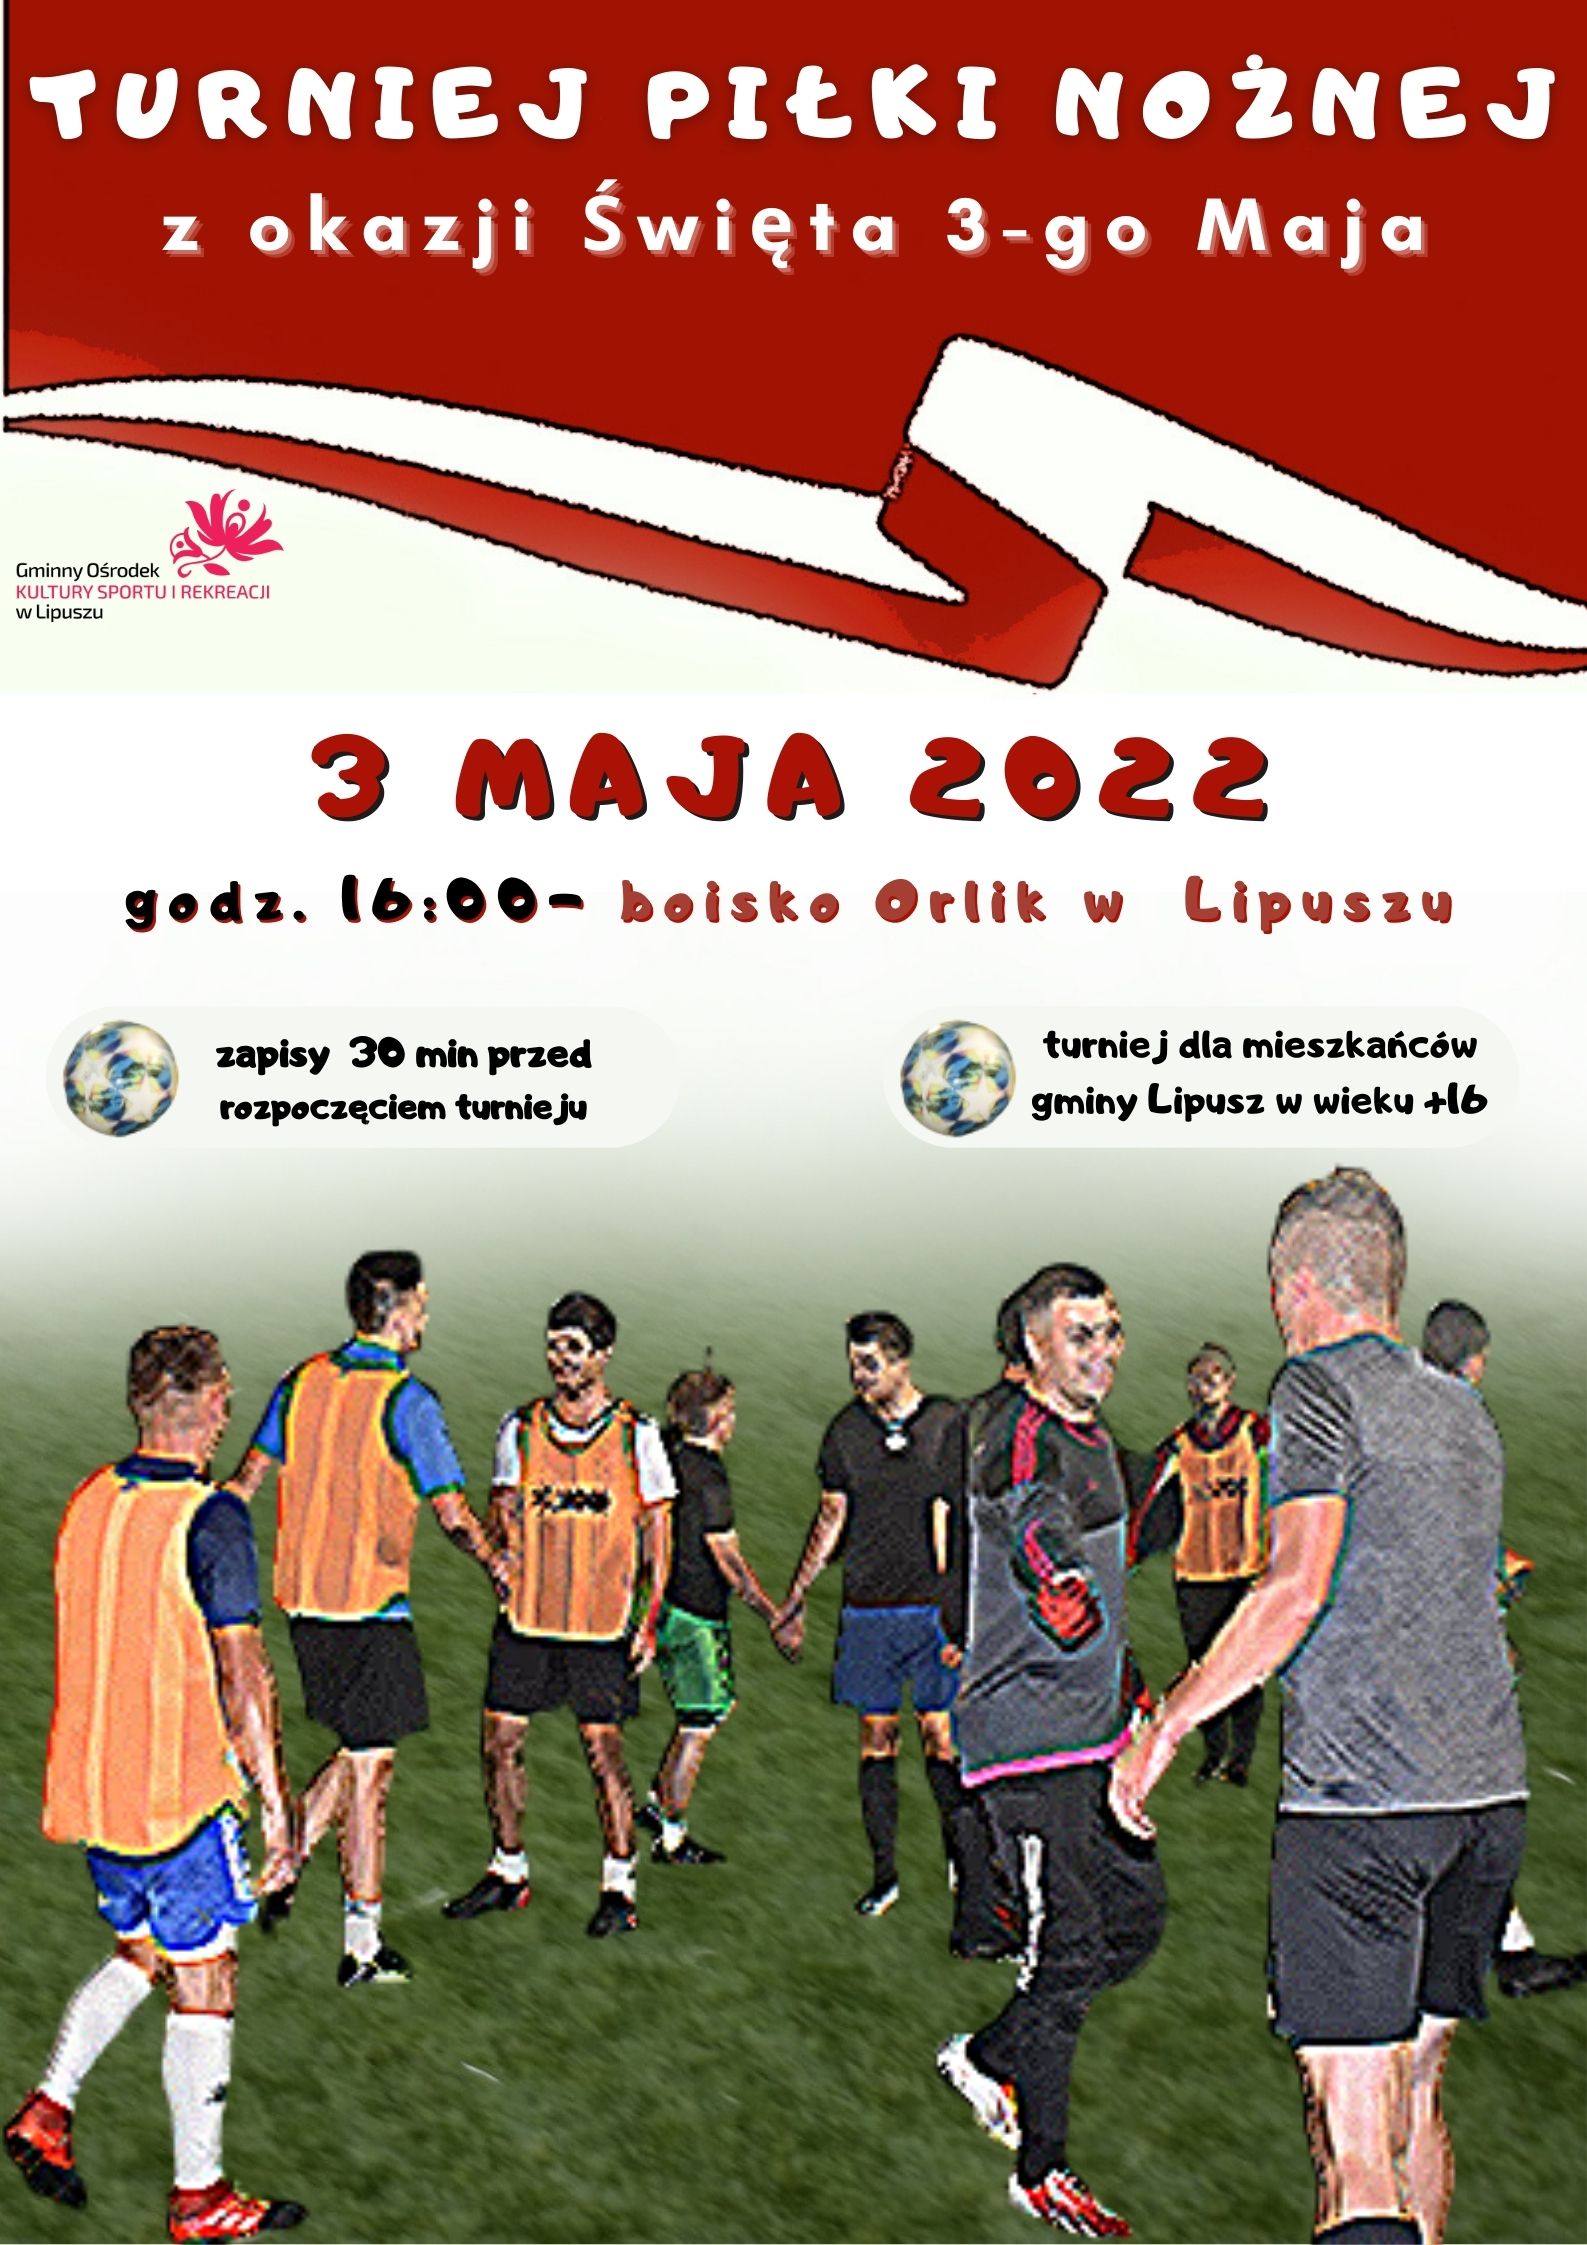 Plakat Turnieju Piłki Nożnej z okazji Święta 3-go Maja